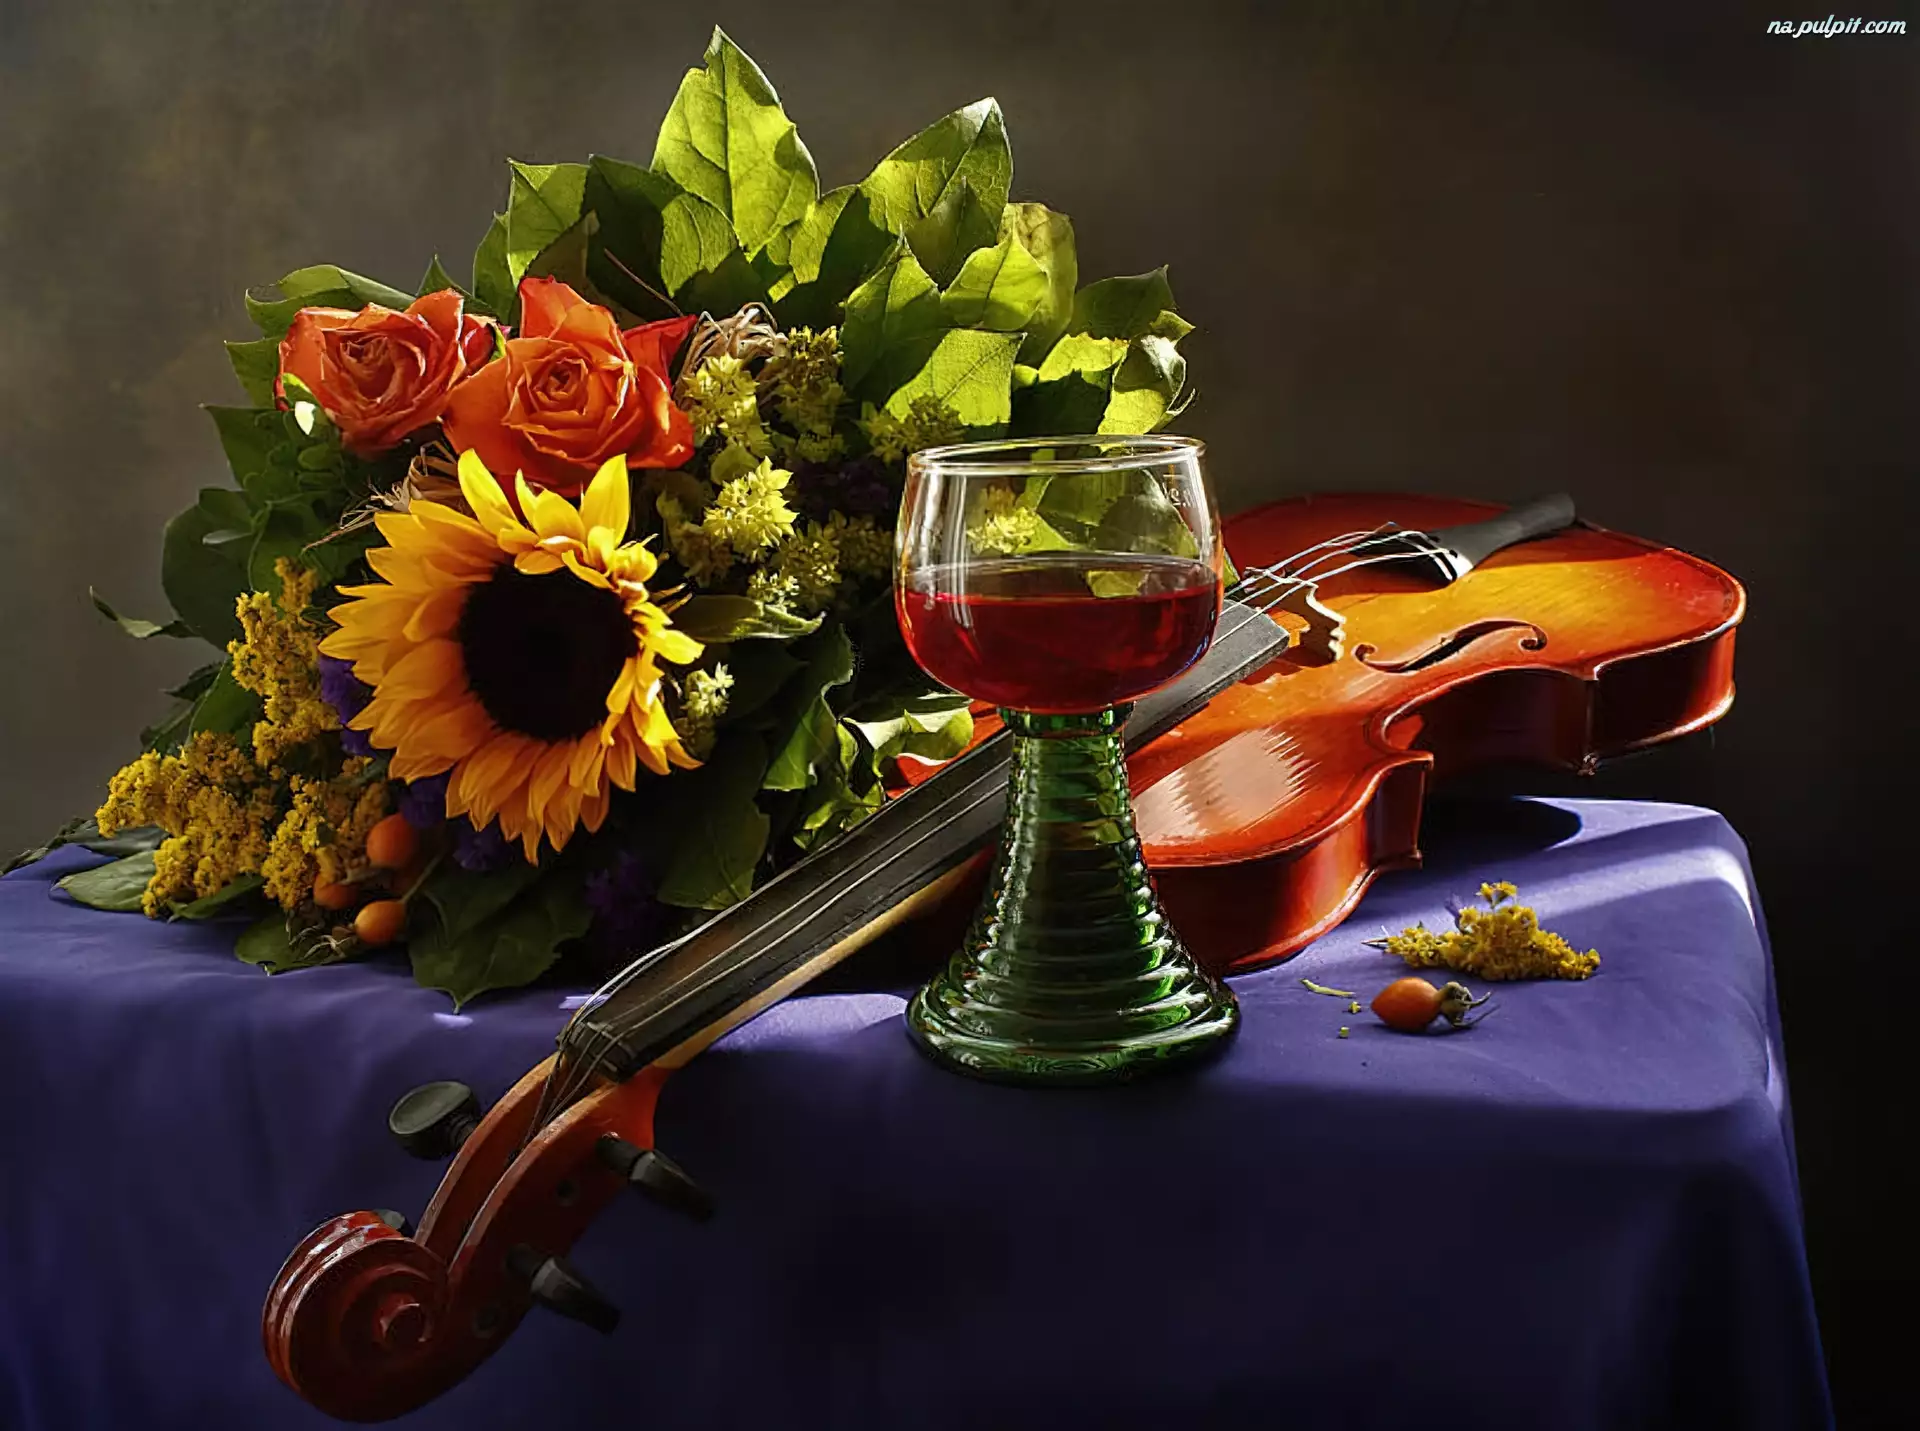 Натюрморт с музыкальными инструментами. Музыкальные инструменты и цветы. Натюрморт со скрипкой. Красивая вечерняя композиция.